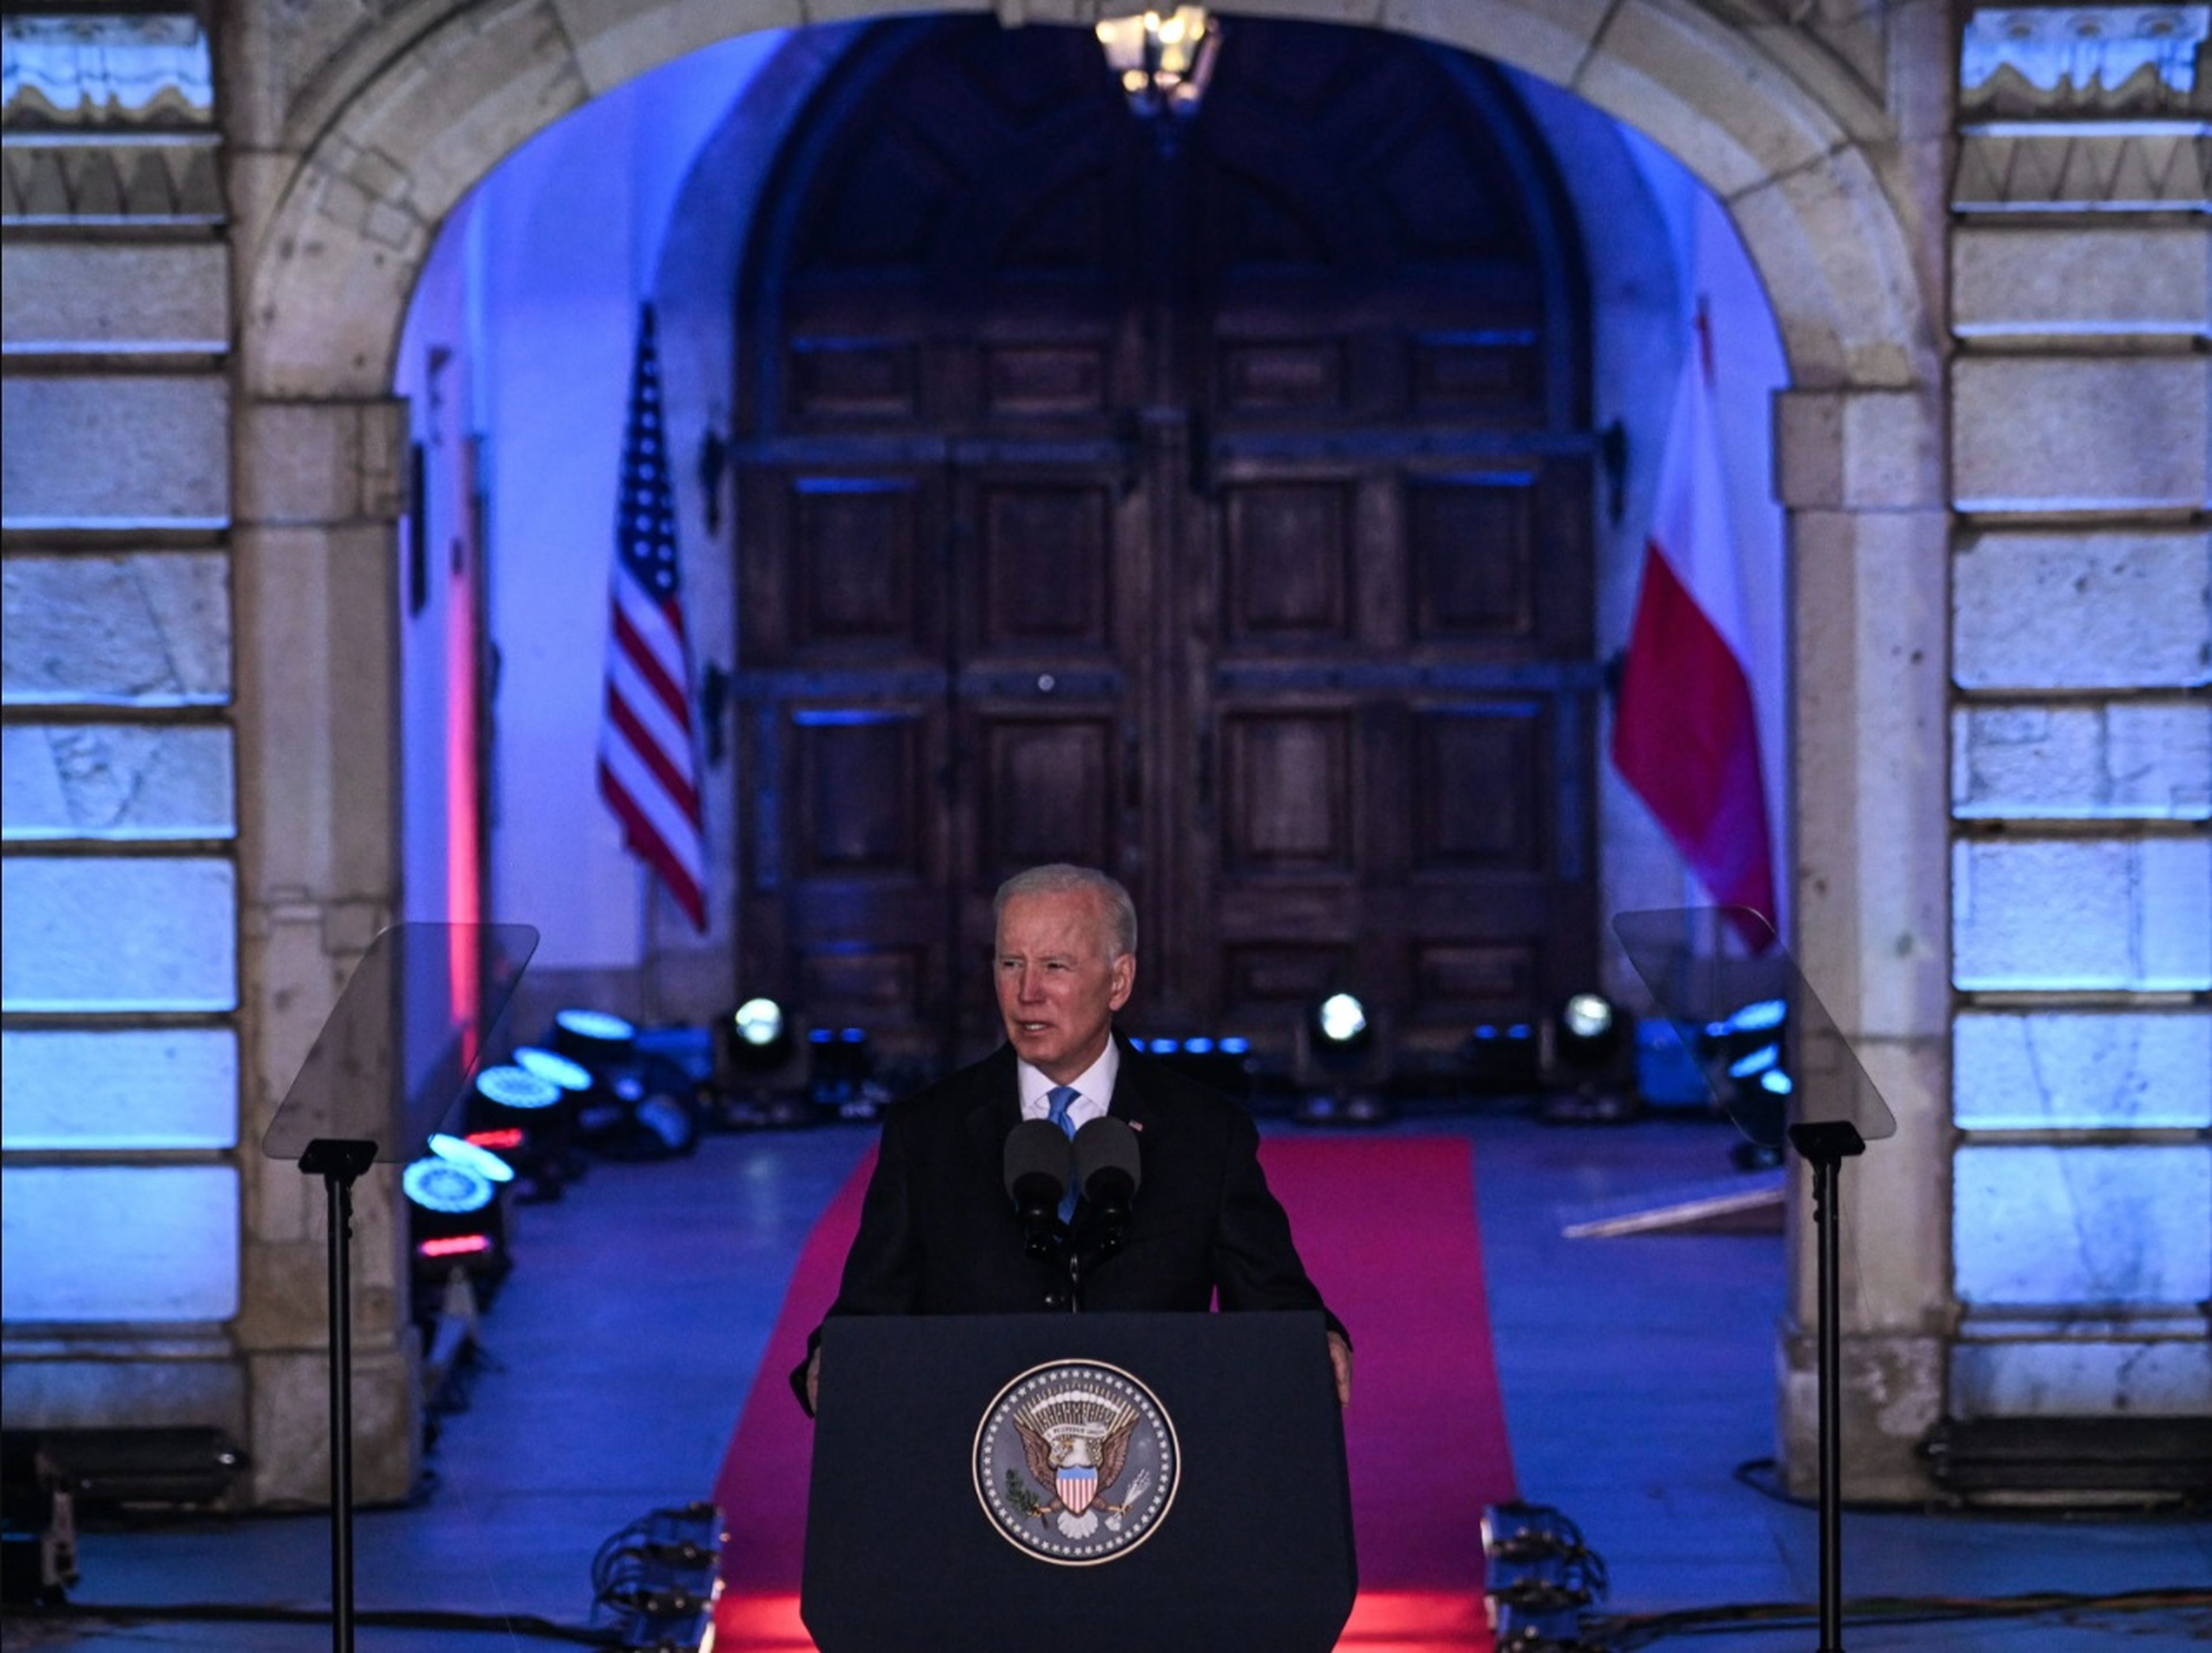 En marzo, el presidente Joe Biden viajó a Varsovia, donde pidió que se endurecieran las sanciones contra Rusia recurriendo al mismo discurso del "bien y el mal" que caracterizó la primera Guerra Fría.